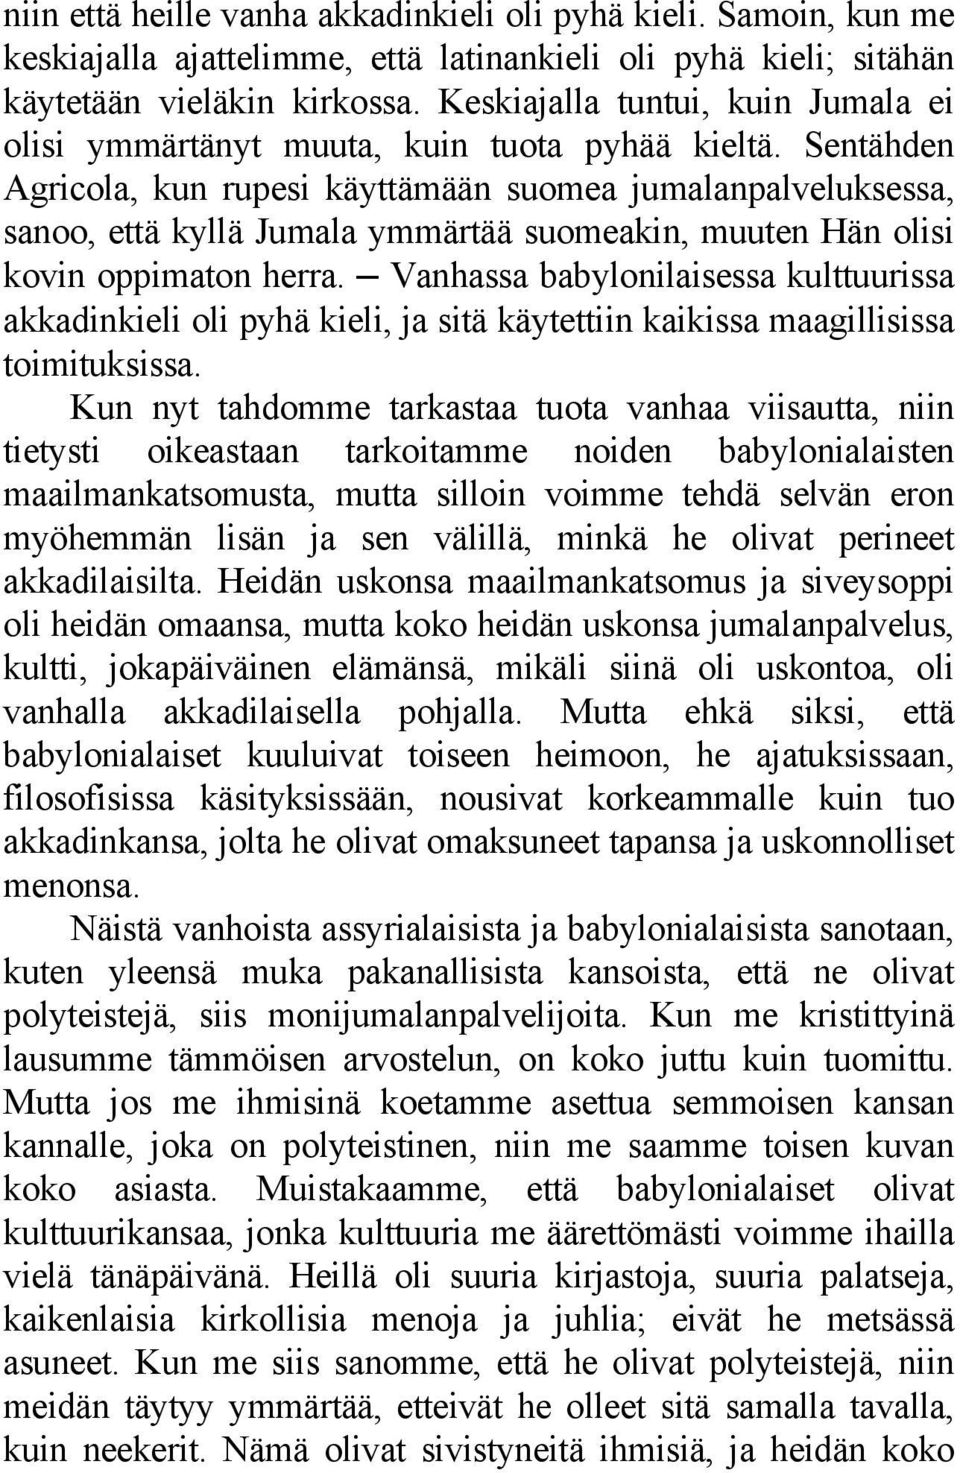 Sentähden Agricola, kun rupesi käyttämään suomea jumalanpalveluksessa, sanoo, että kyllä Jumala ymmärtää suomeakin, muuten Hän olisi kovin oppimaton herra.